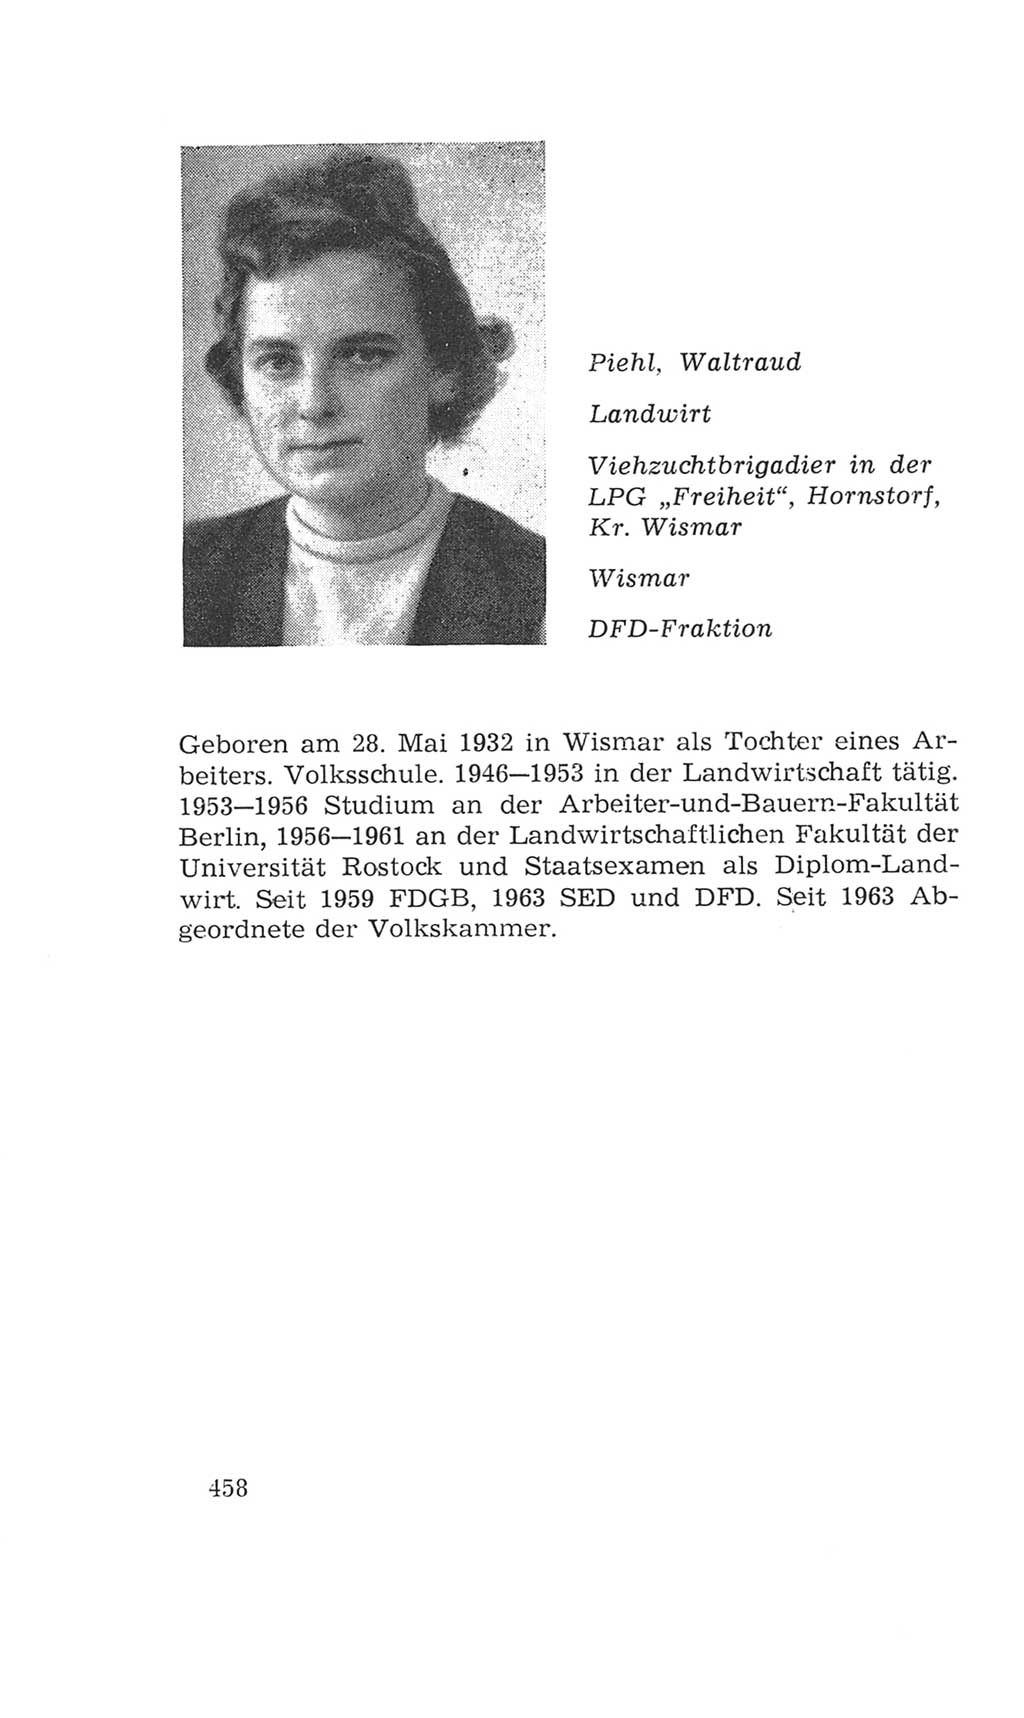 Volkskammer (VK) der Deutschen Demokratischen Republik (DDR), 4. Wahlperiode 1963-1967, Seite 458 (VK. DDR 4. WP. 1963-1967, S. 458)